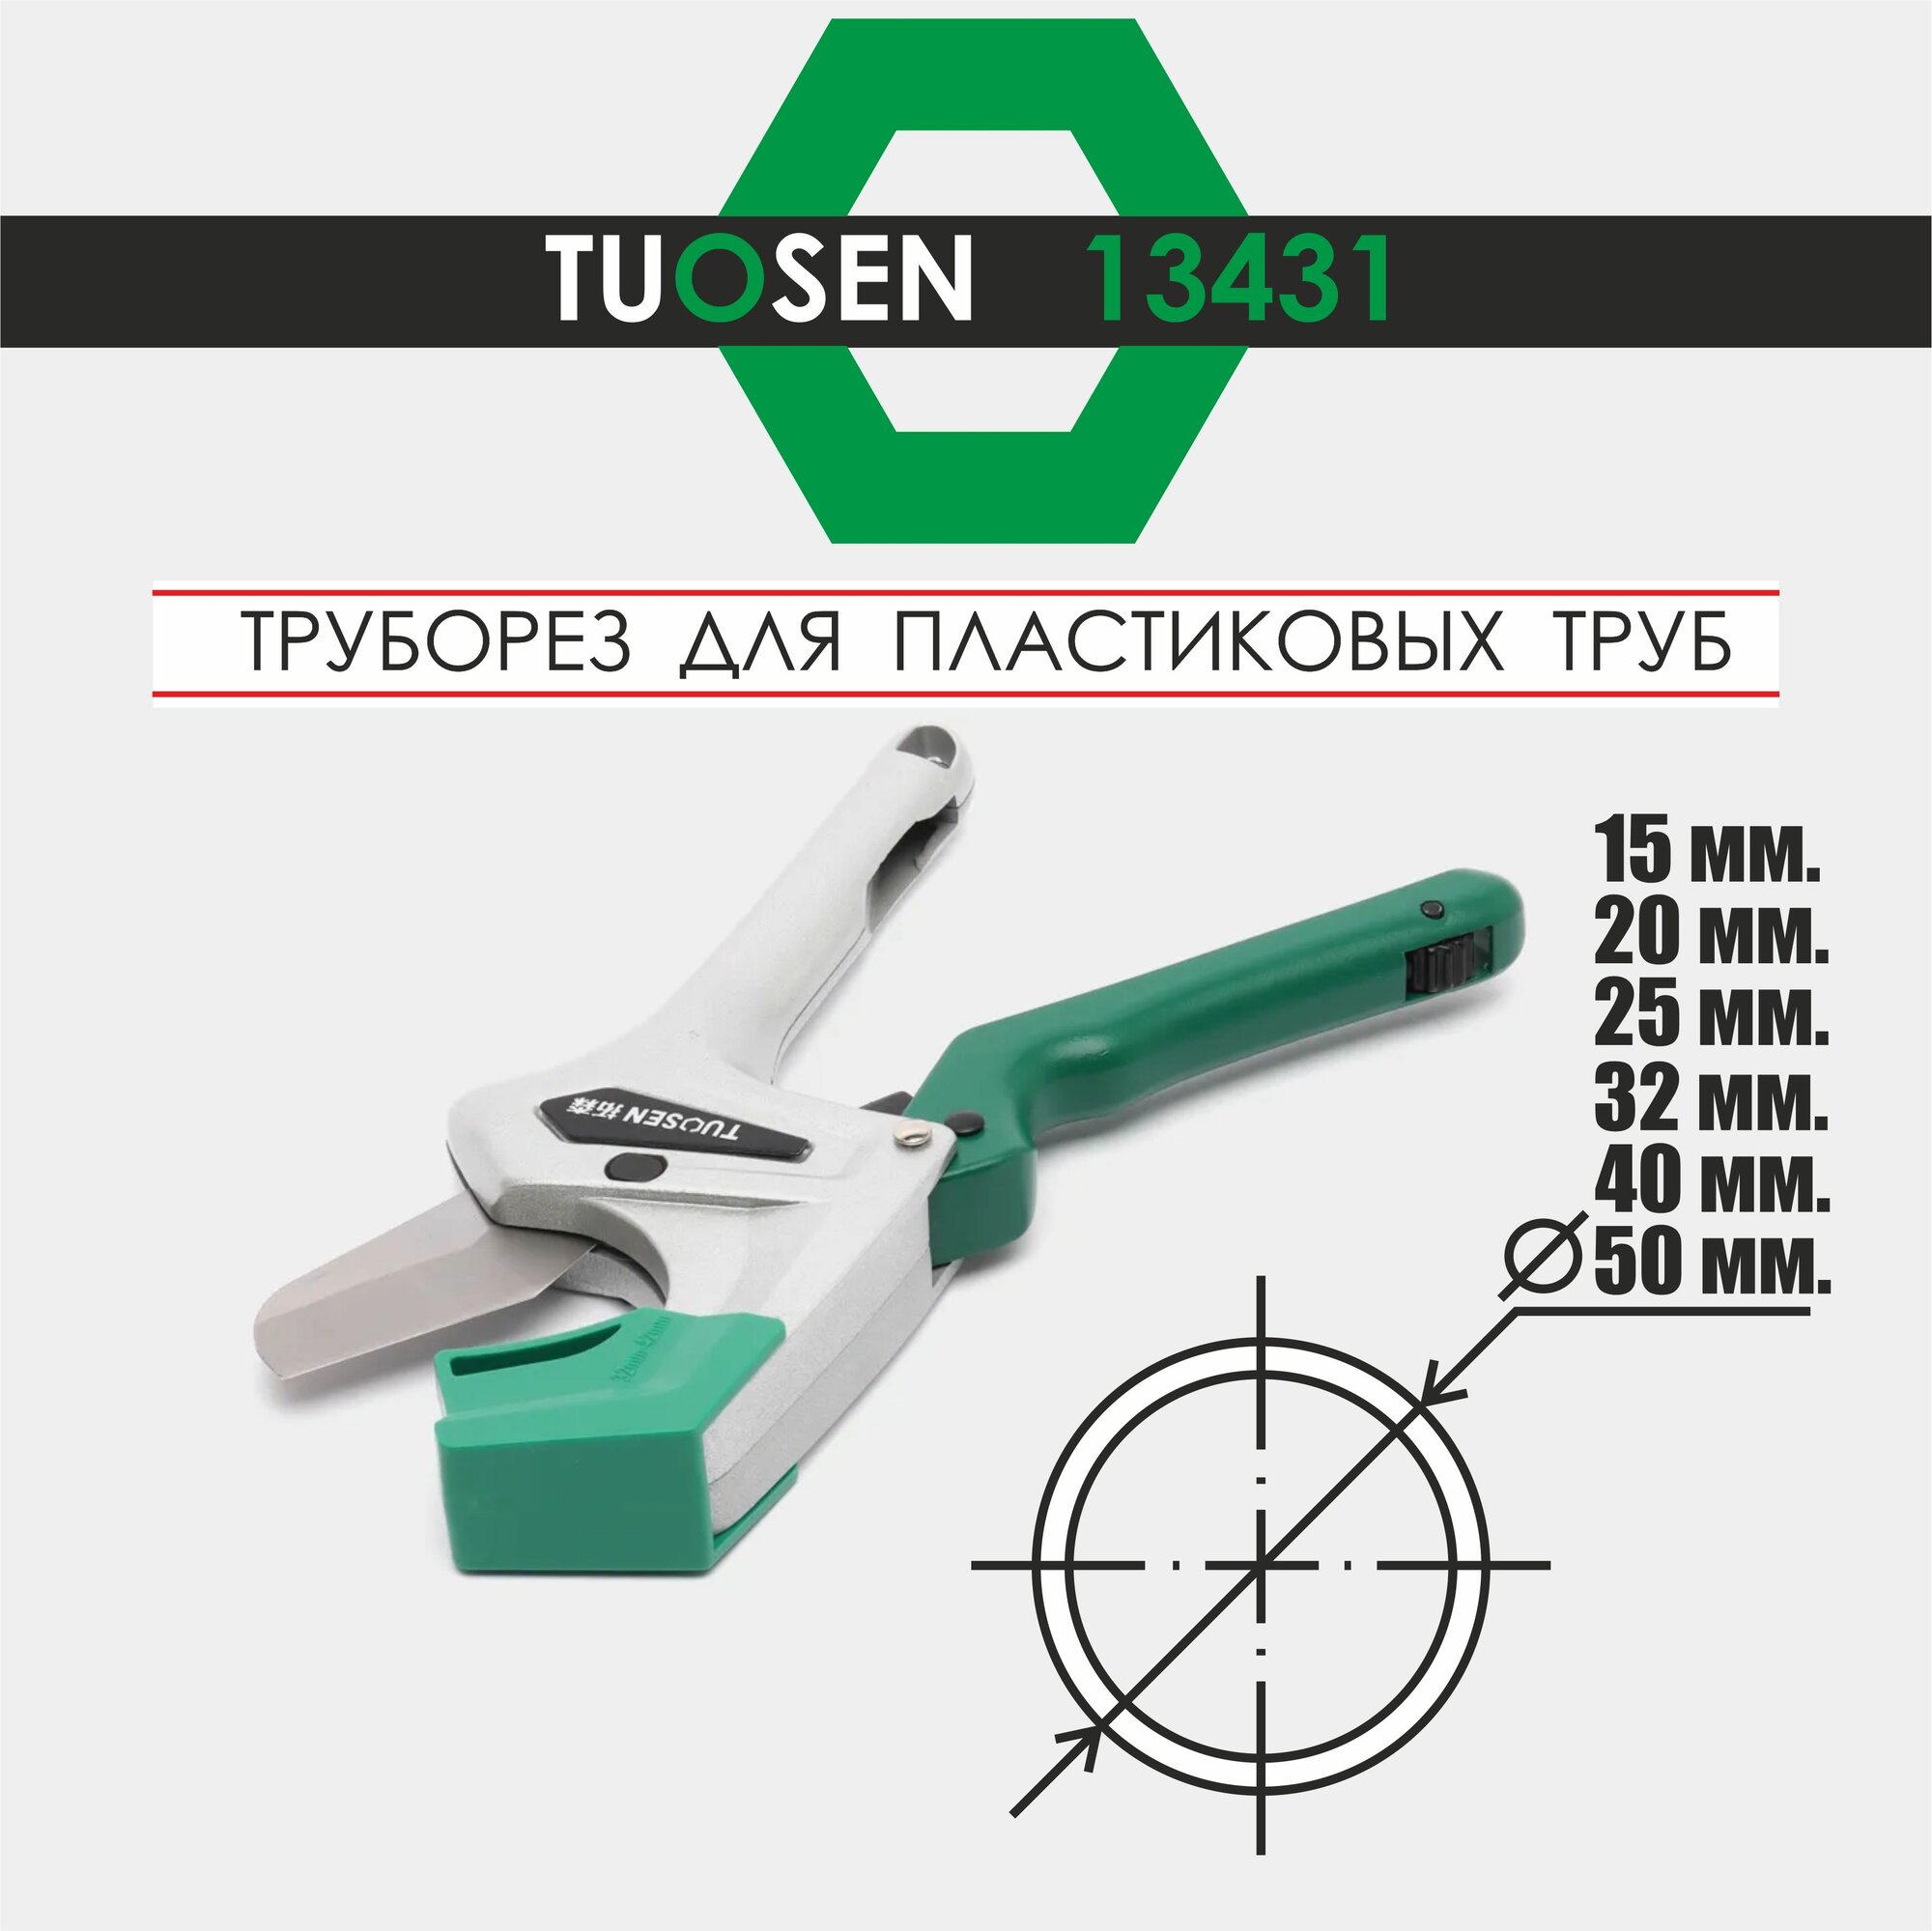 Ножницы труборез для резки труб ПВХ/ Труборез Tuosen 13431